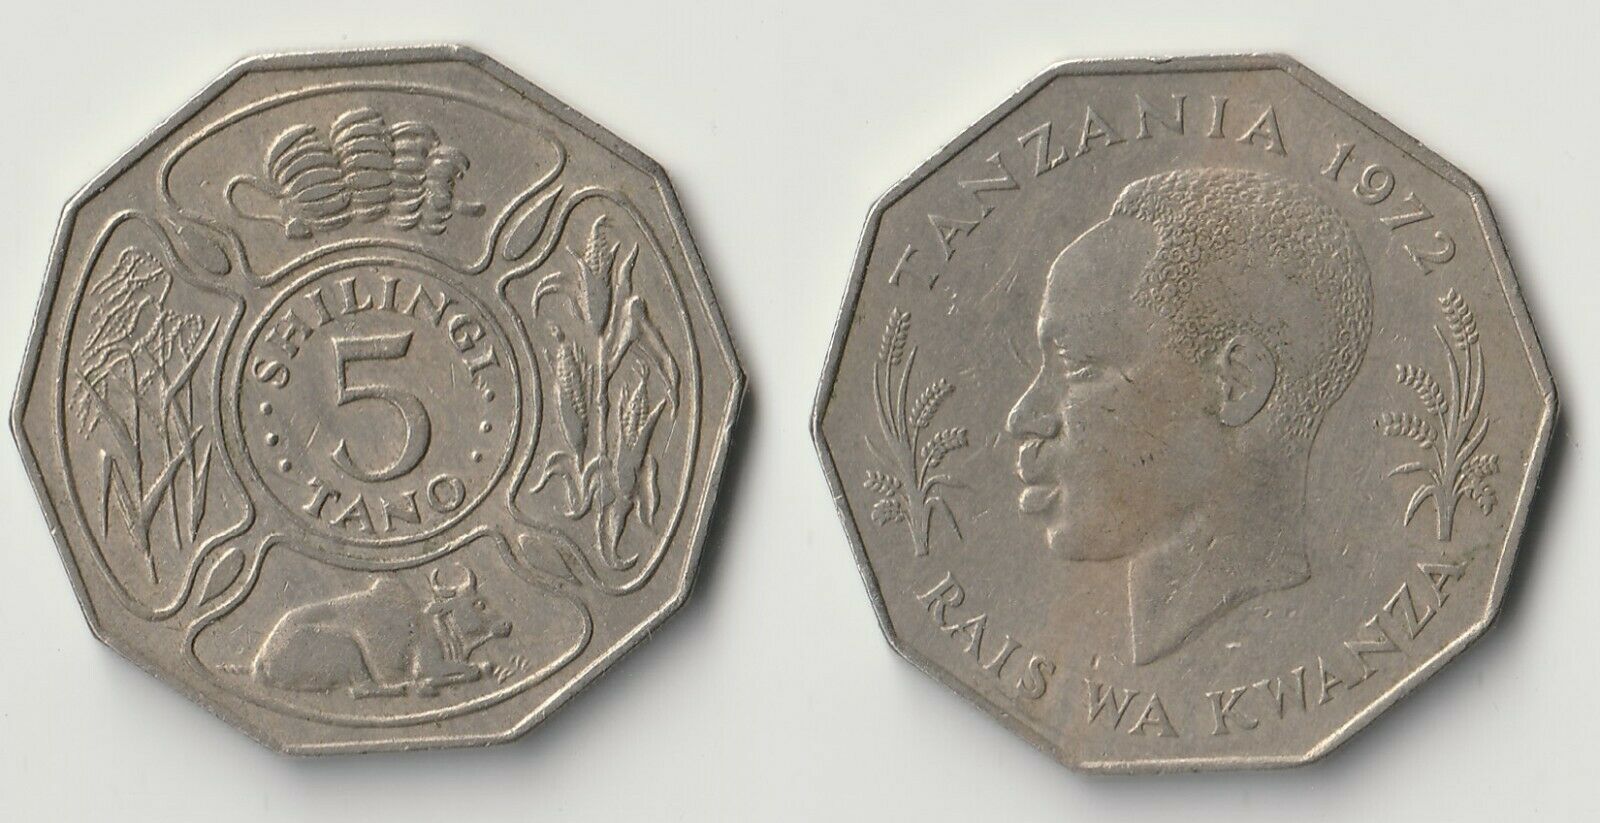 1972 Tanzania 5 shilingi coin